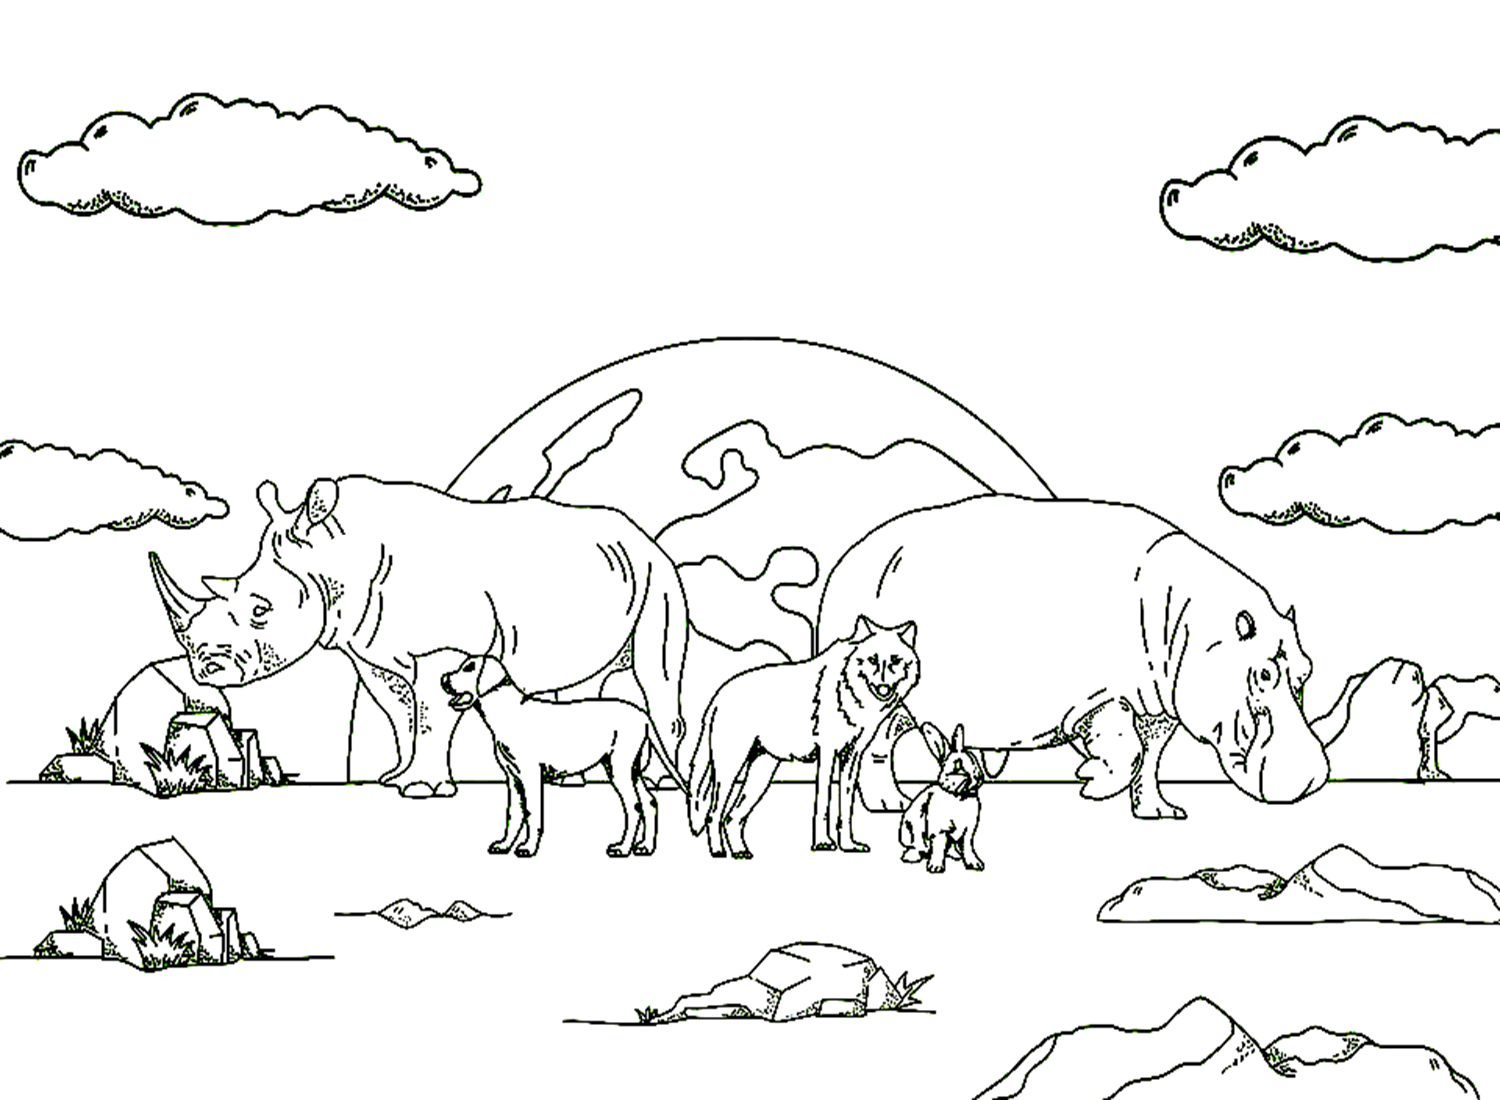 وحيد القرن في يوم الحيوان العالمي من وحيد القرن